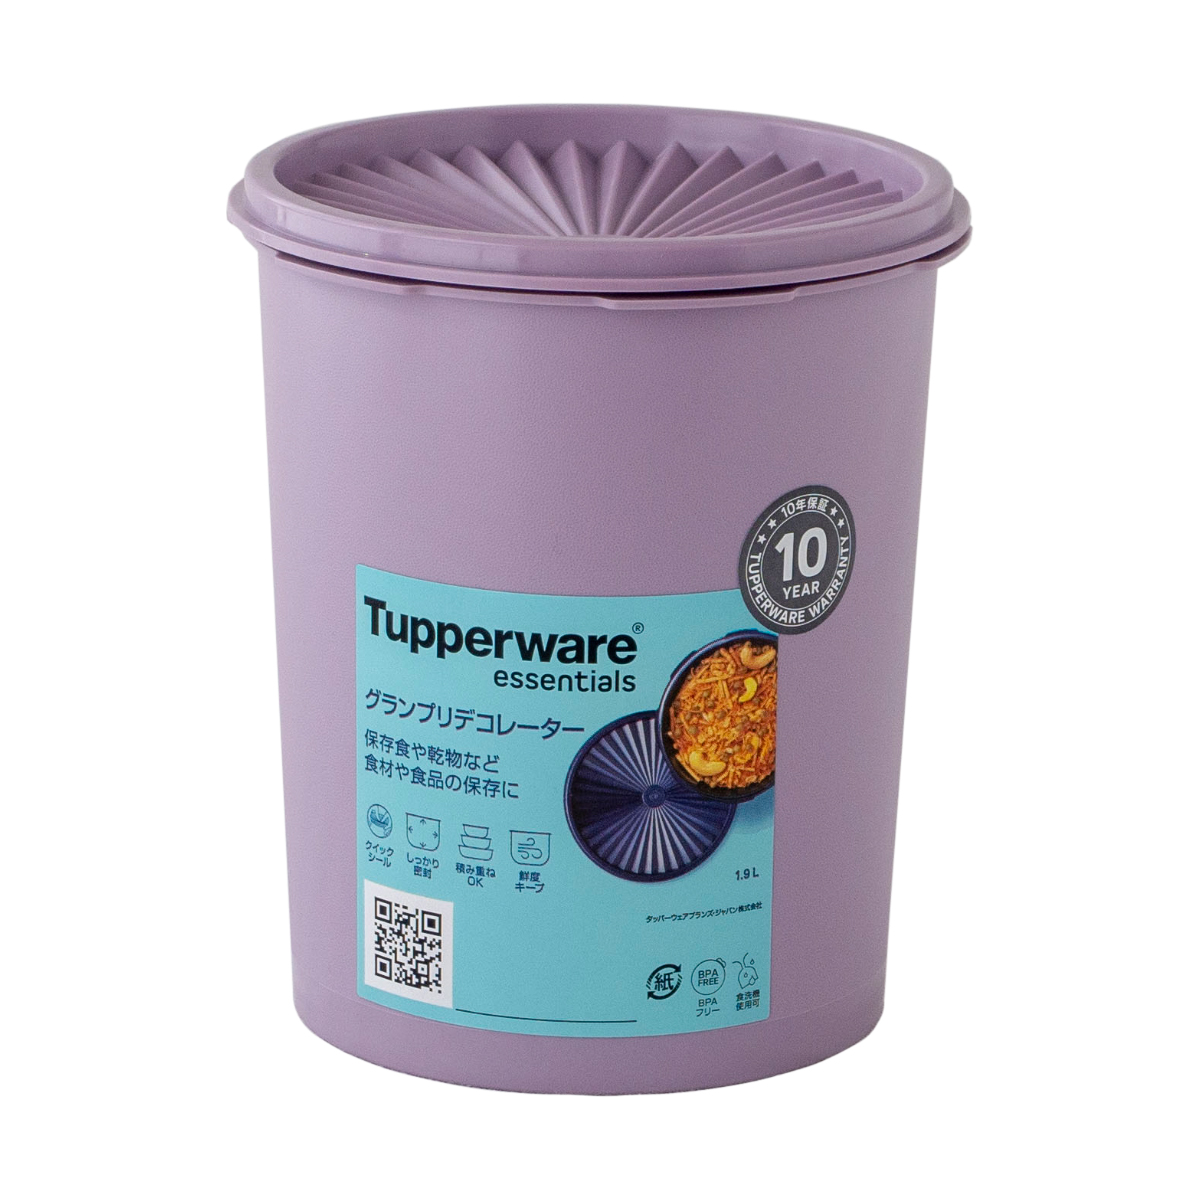 タッパーウェア Tupperware グランプリデコレーター M 1900ml 密封 密閉 保存容器 タッパー 食洗機対応 ストッカー 10年保証